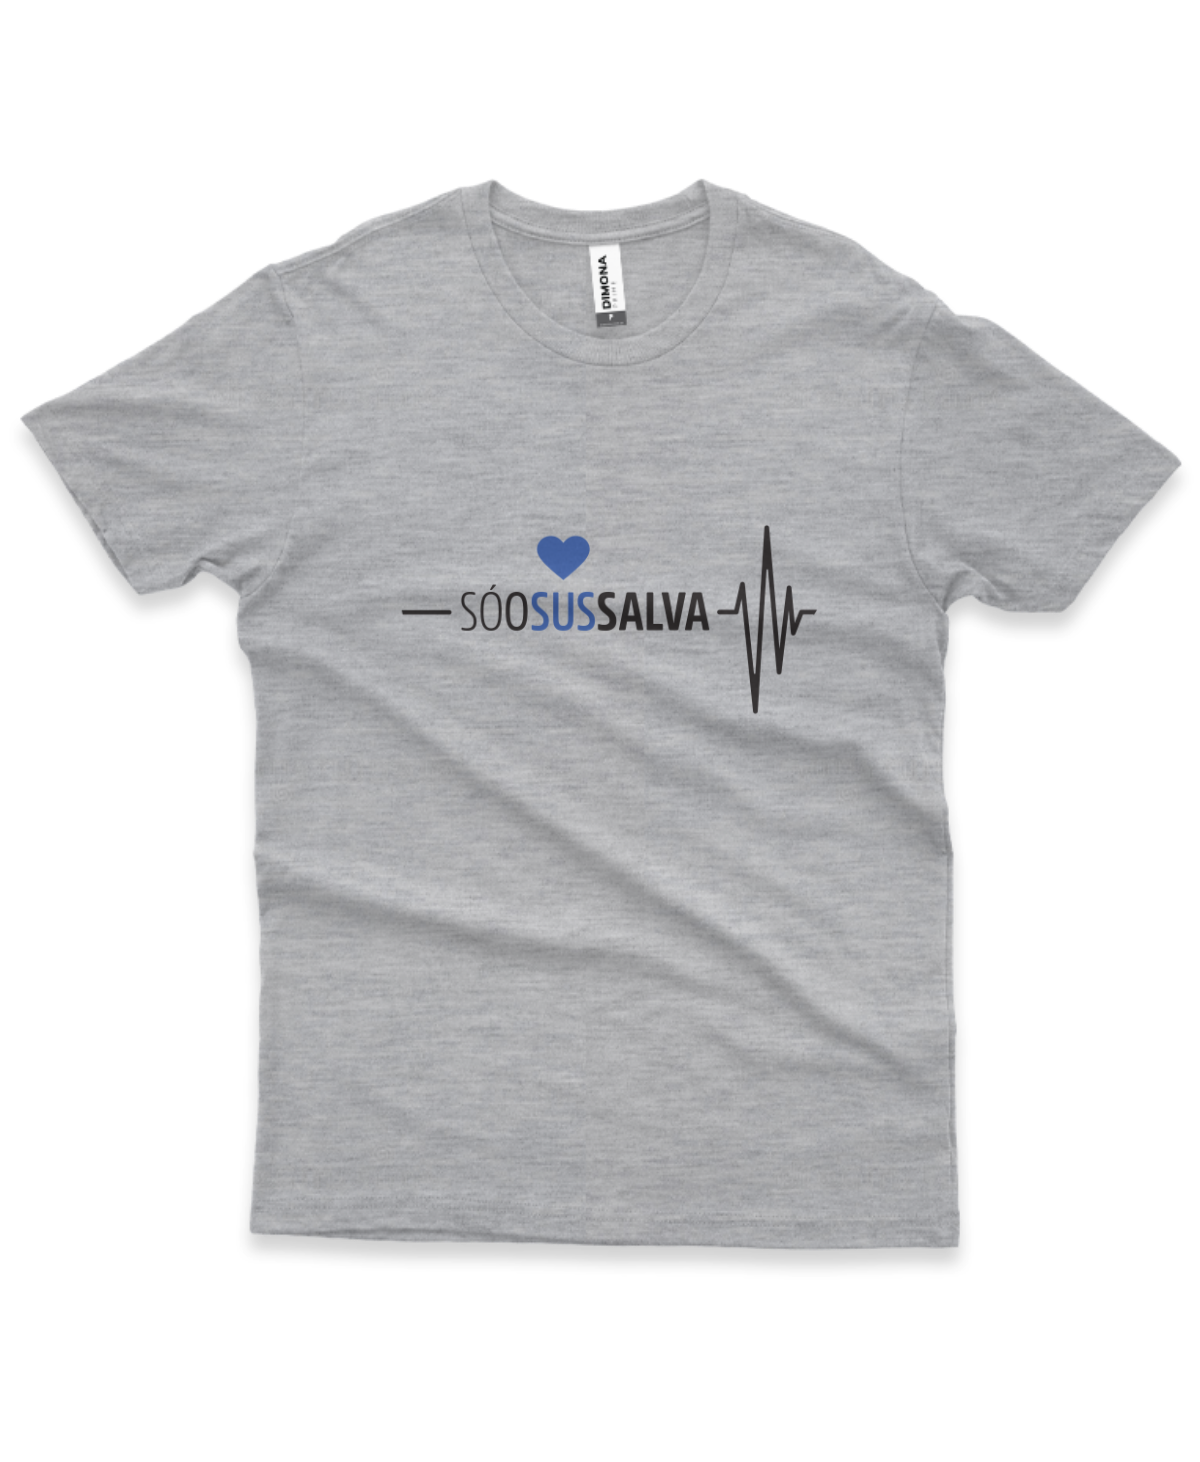 camiseta masculina cor cinza mescla com a ilustração de um coração e eletrocardiograma e a frase "Só o SUS salva"